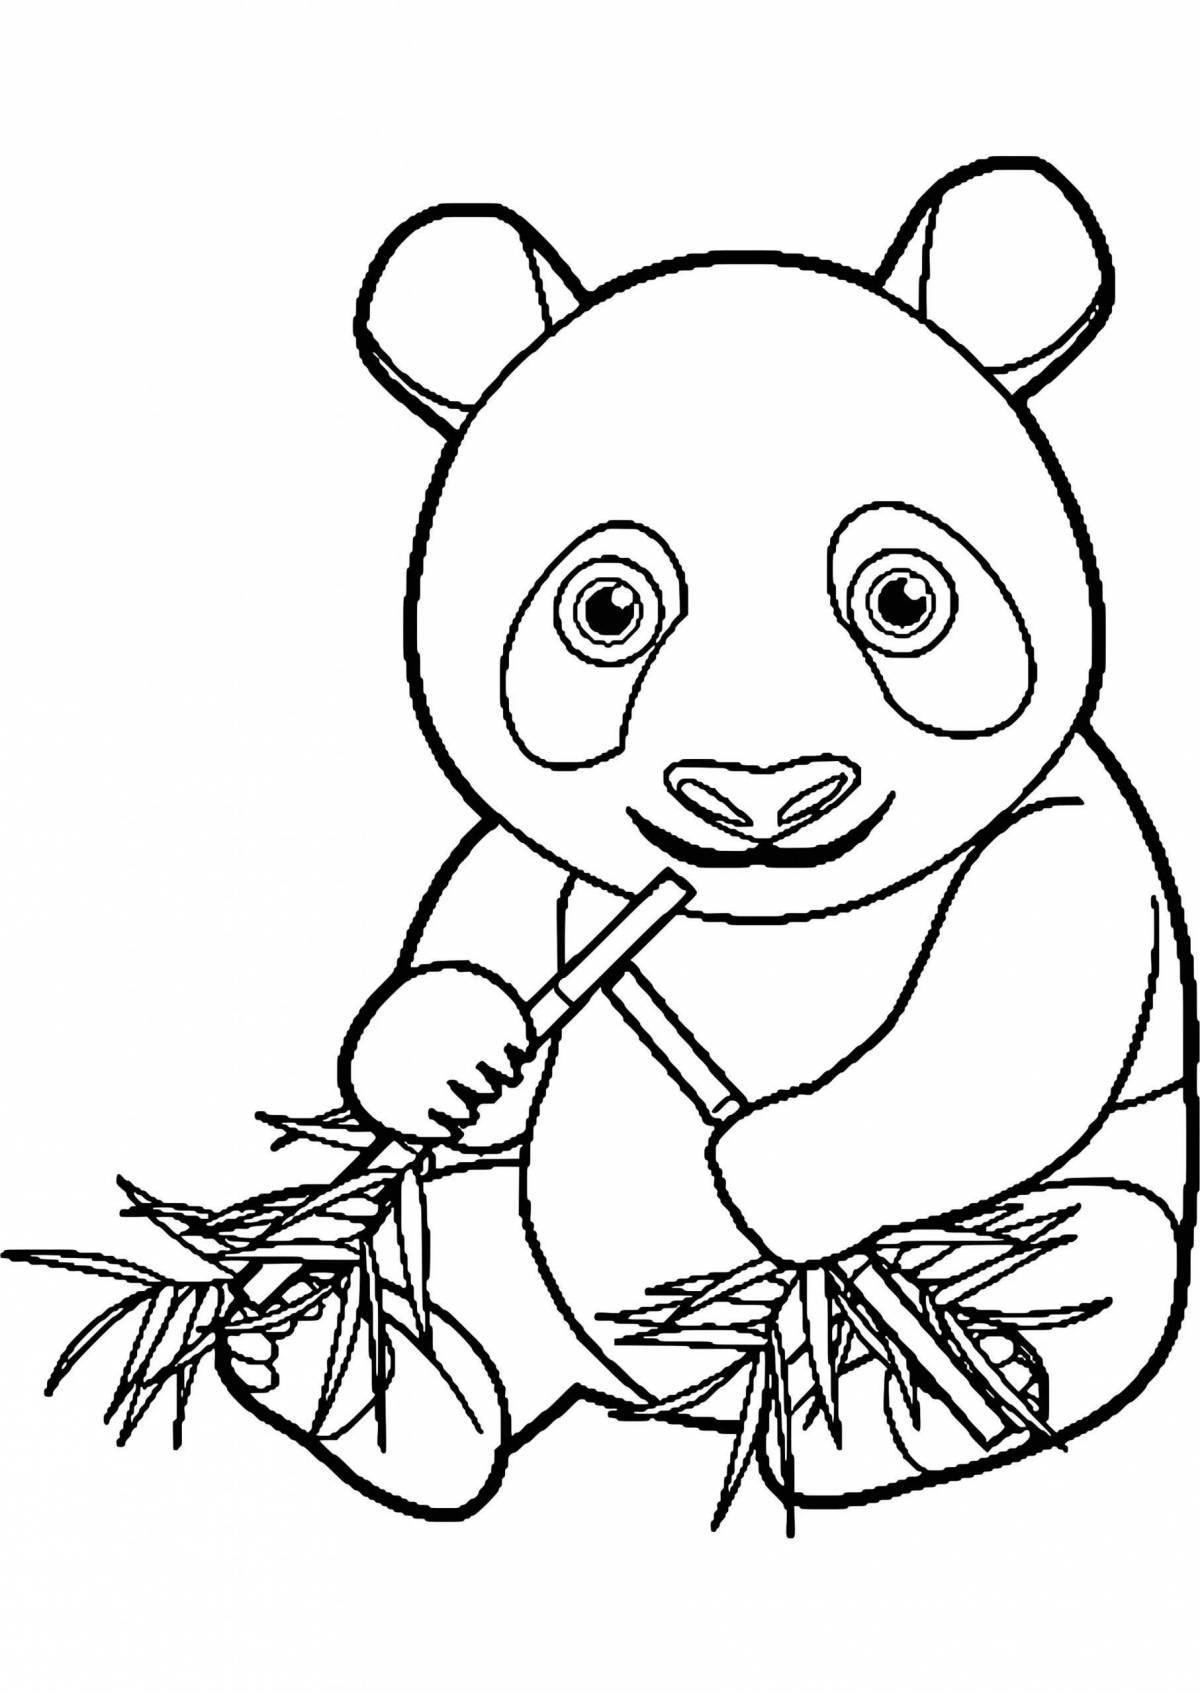 Playful panda bear coloring book